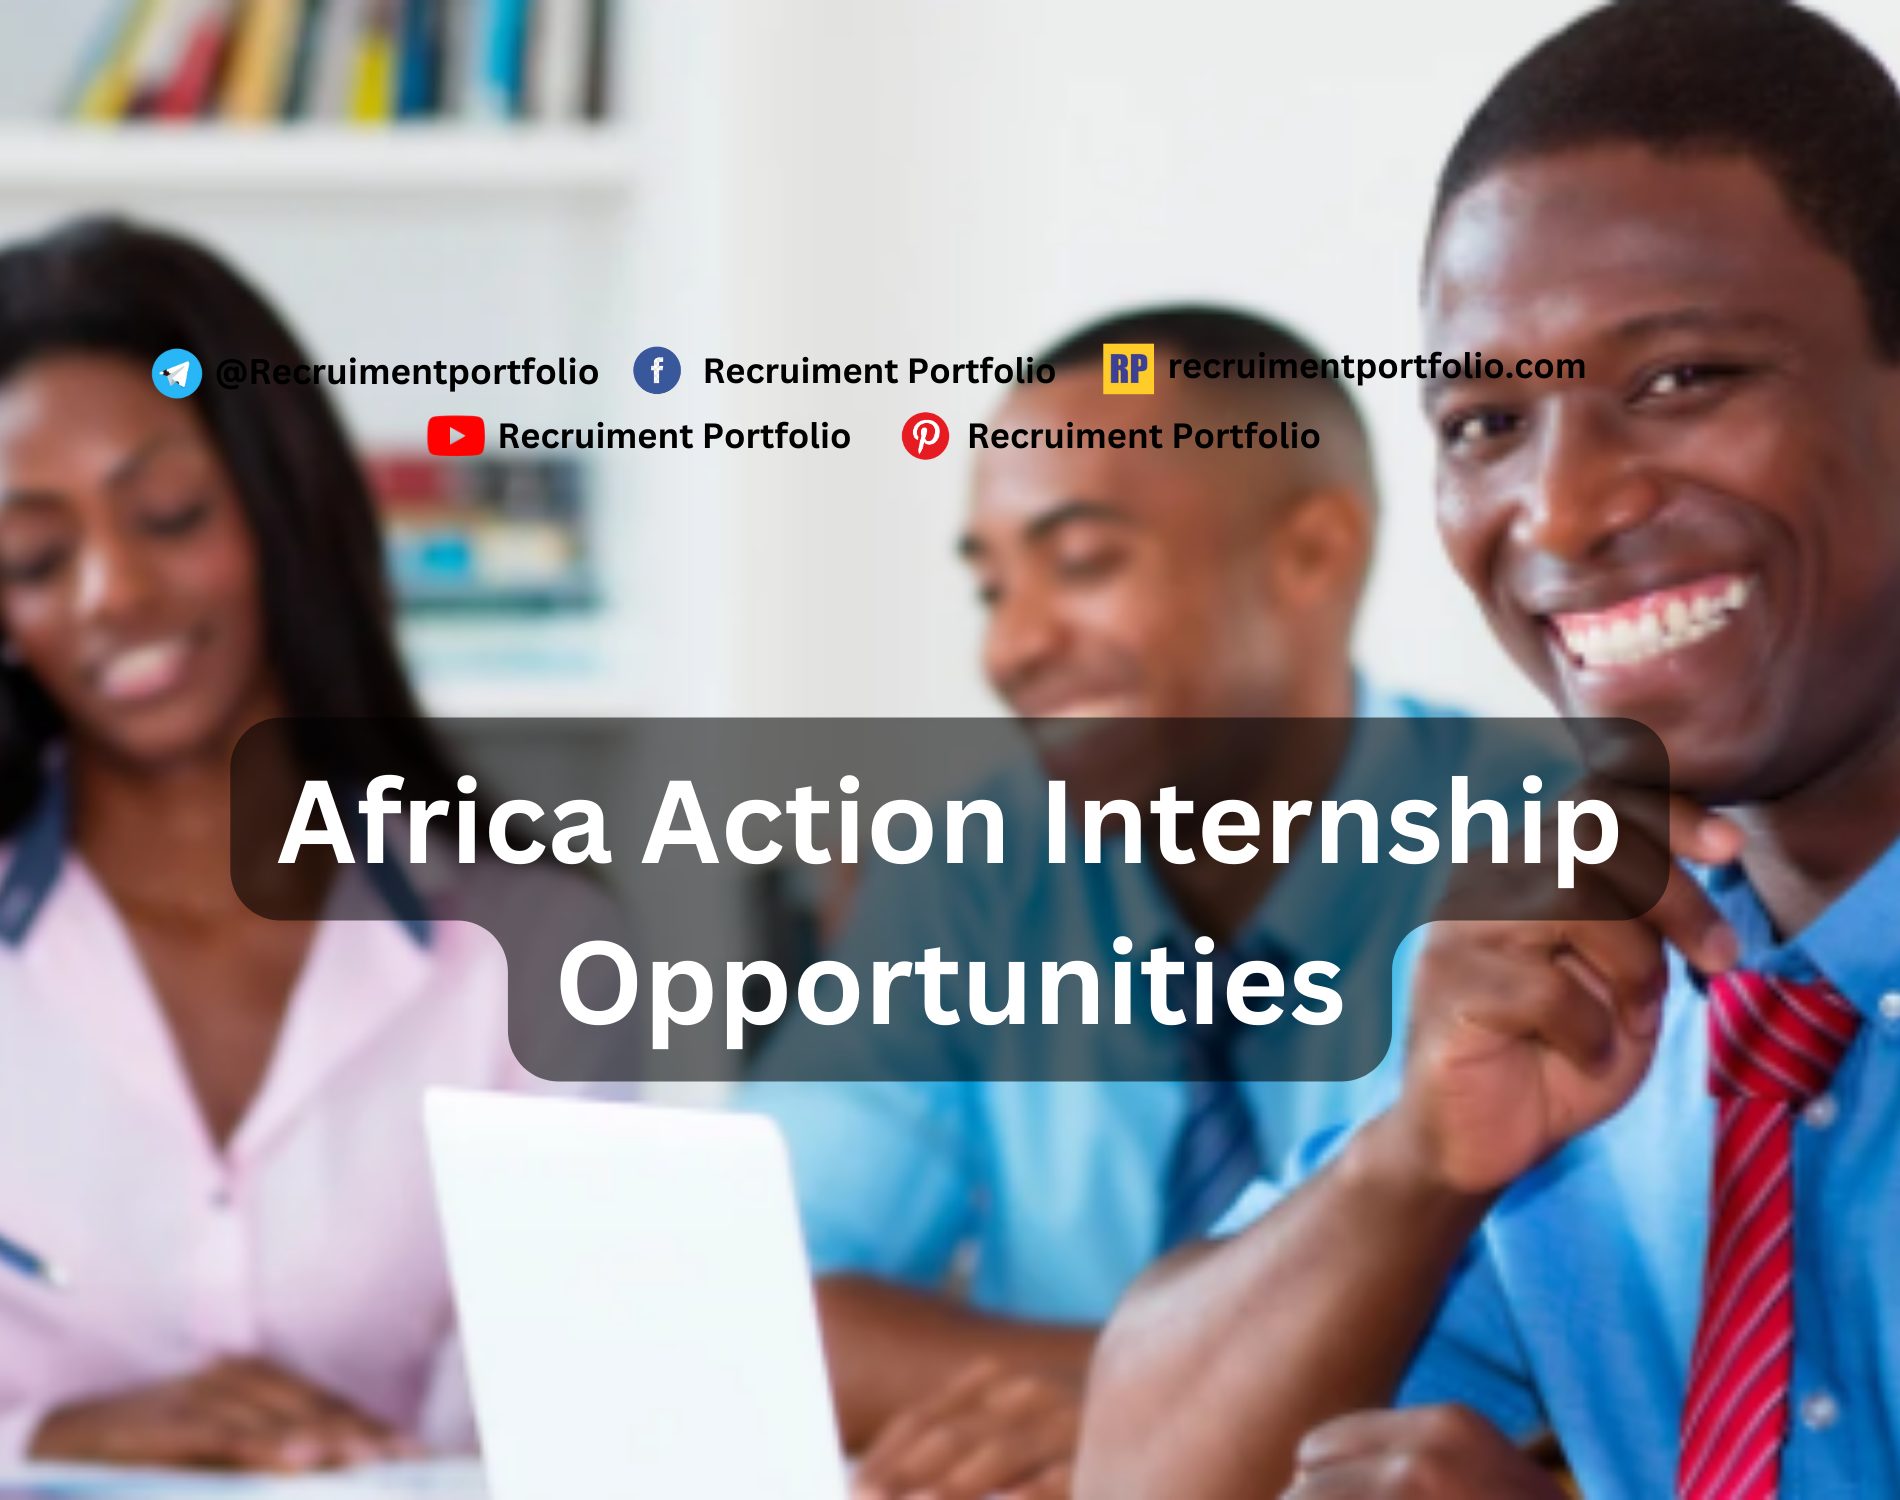 Africa Action Internship